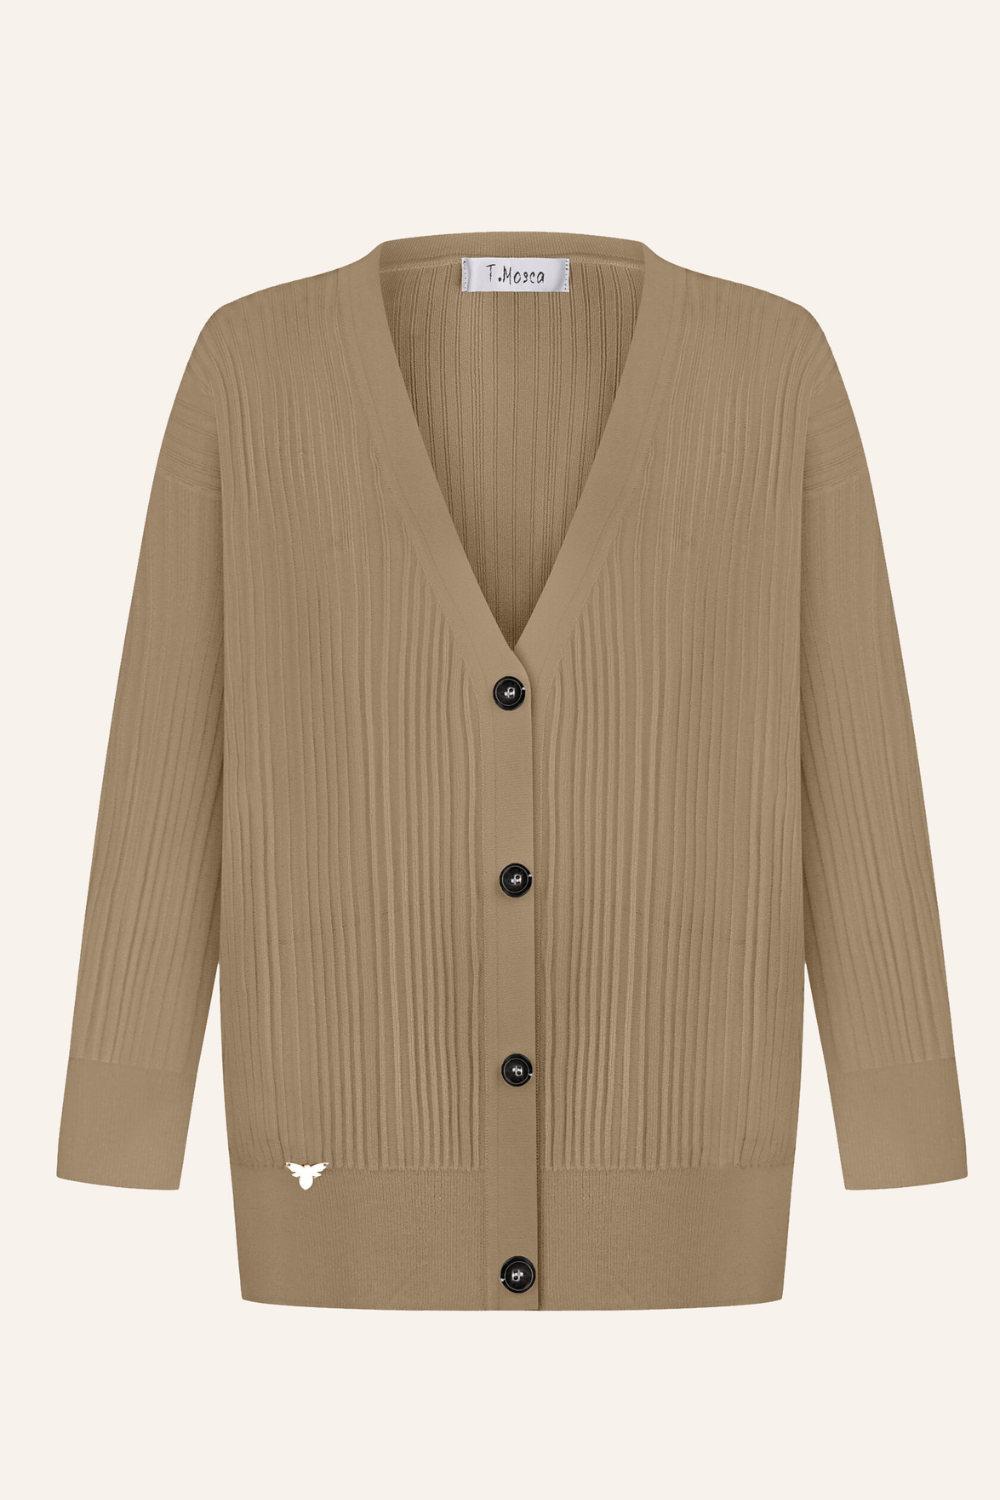 Knitted cardigan, beige (T.Mosca), GOL24-04